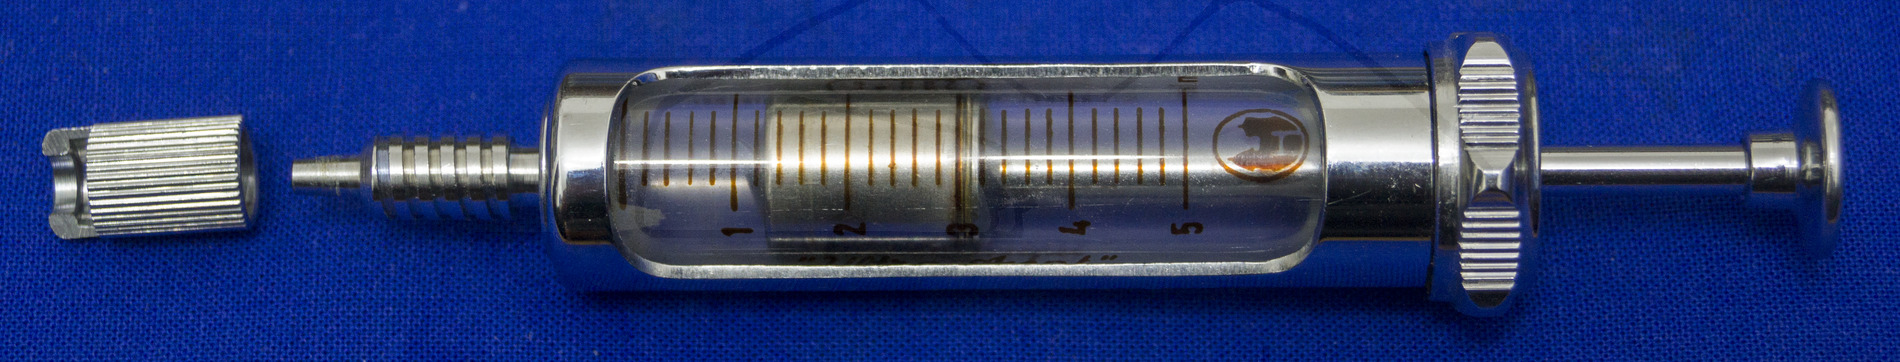 "Ultra Asept" von Henke-Sass, 5ml Volumen, arretierbare Kanüle, für Serum Injektionen, Montierte Spritze mit Überwurfmutter zur arretierung